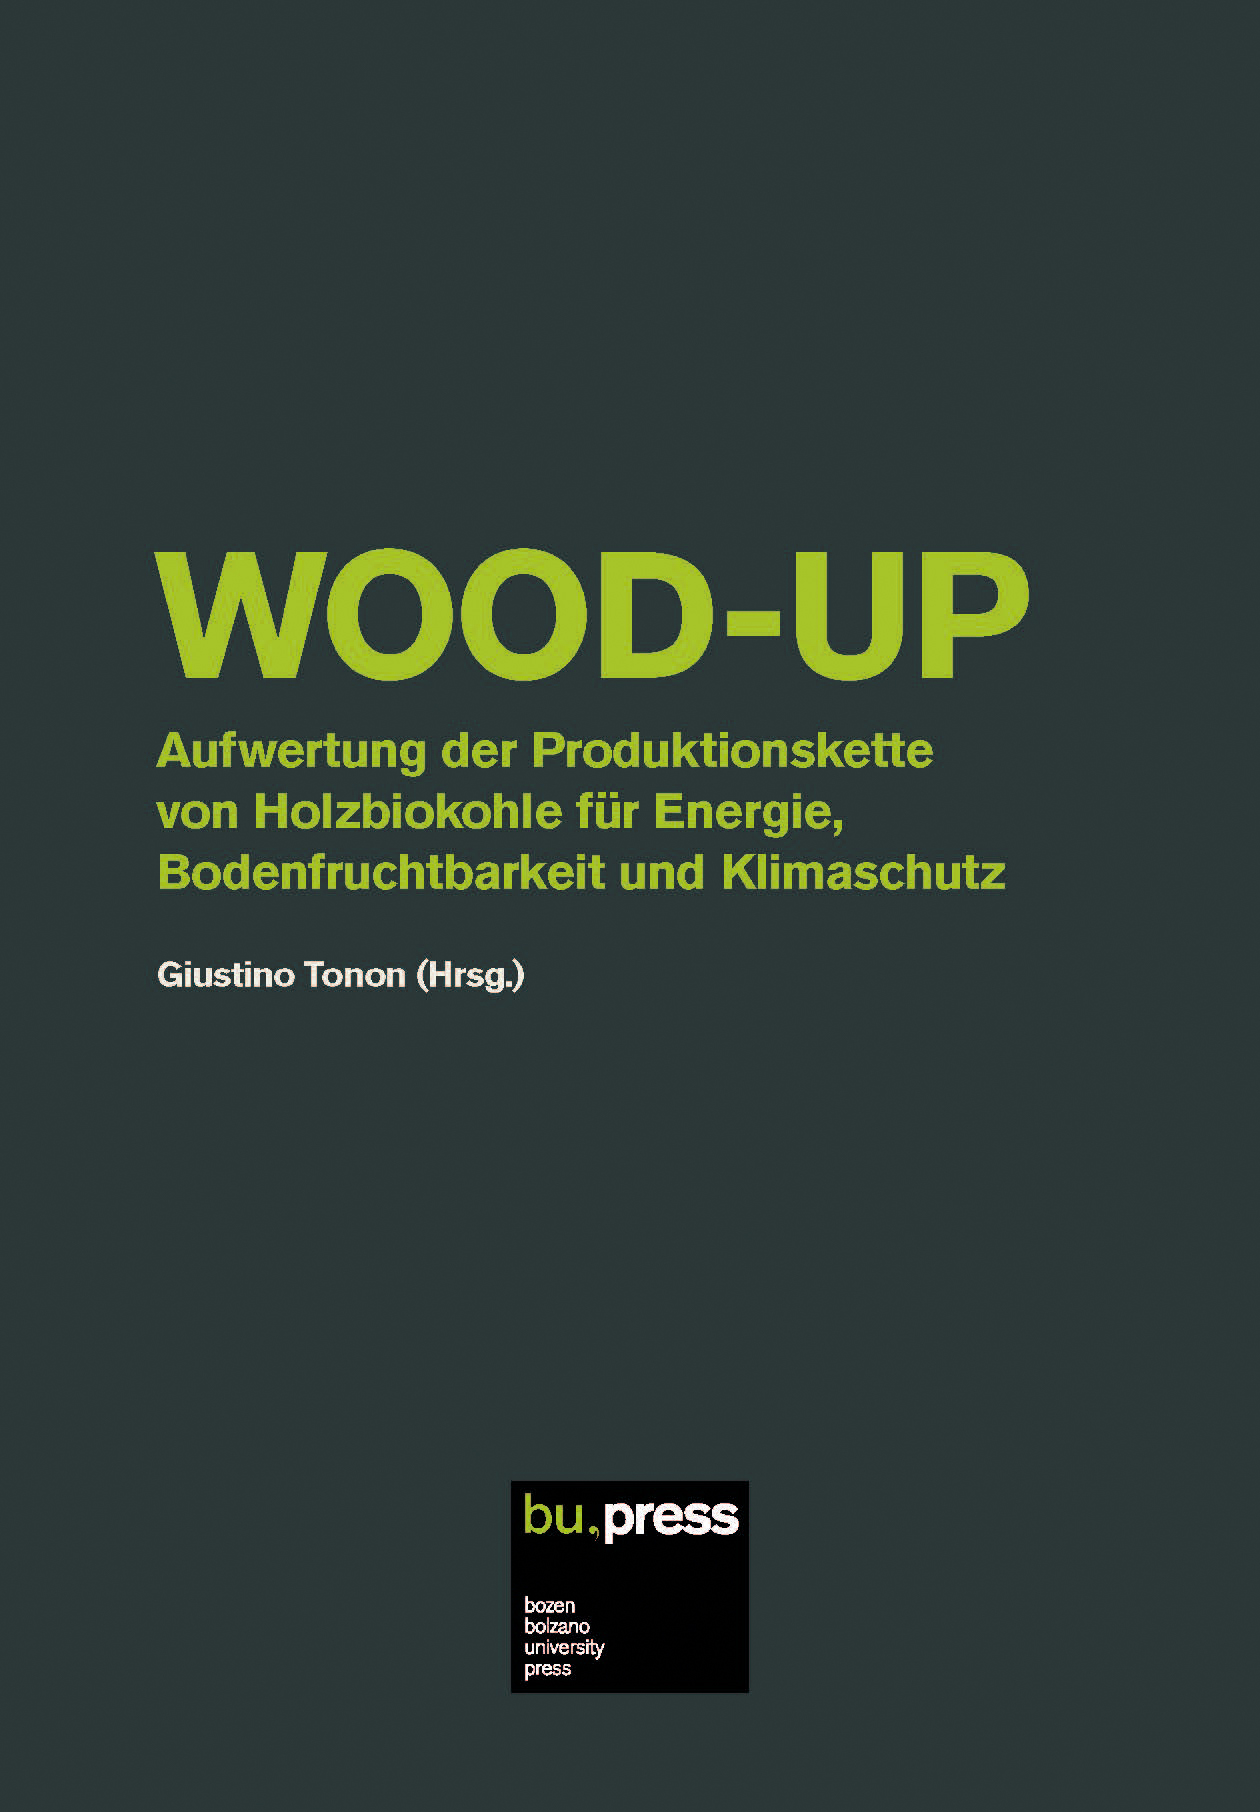 Cover of WOOD-UP – Aufwertung der Produktionskette von Holzbiokohle für Energie, Bodenfruchtbarkeit und Klimaschutz